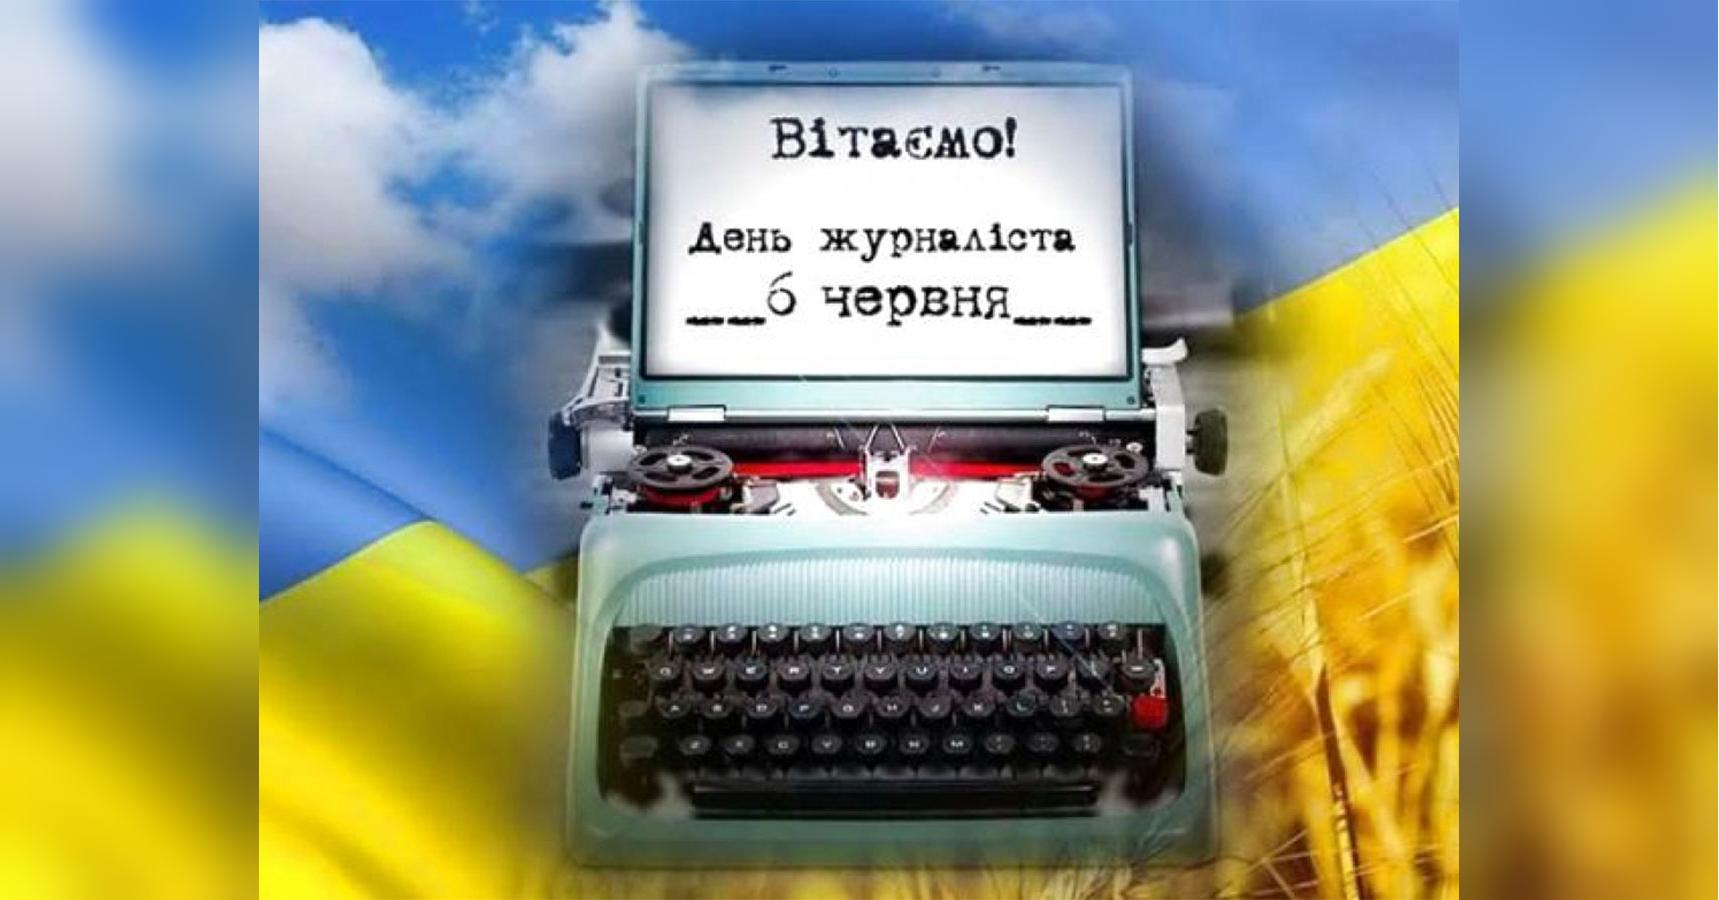 С днем журналиста! Праздничные картинки и поздравления на украинском